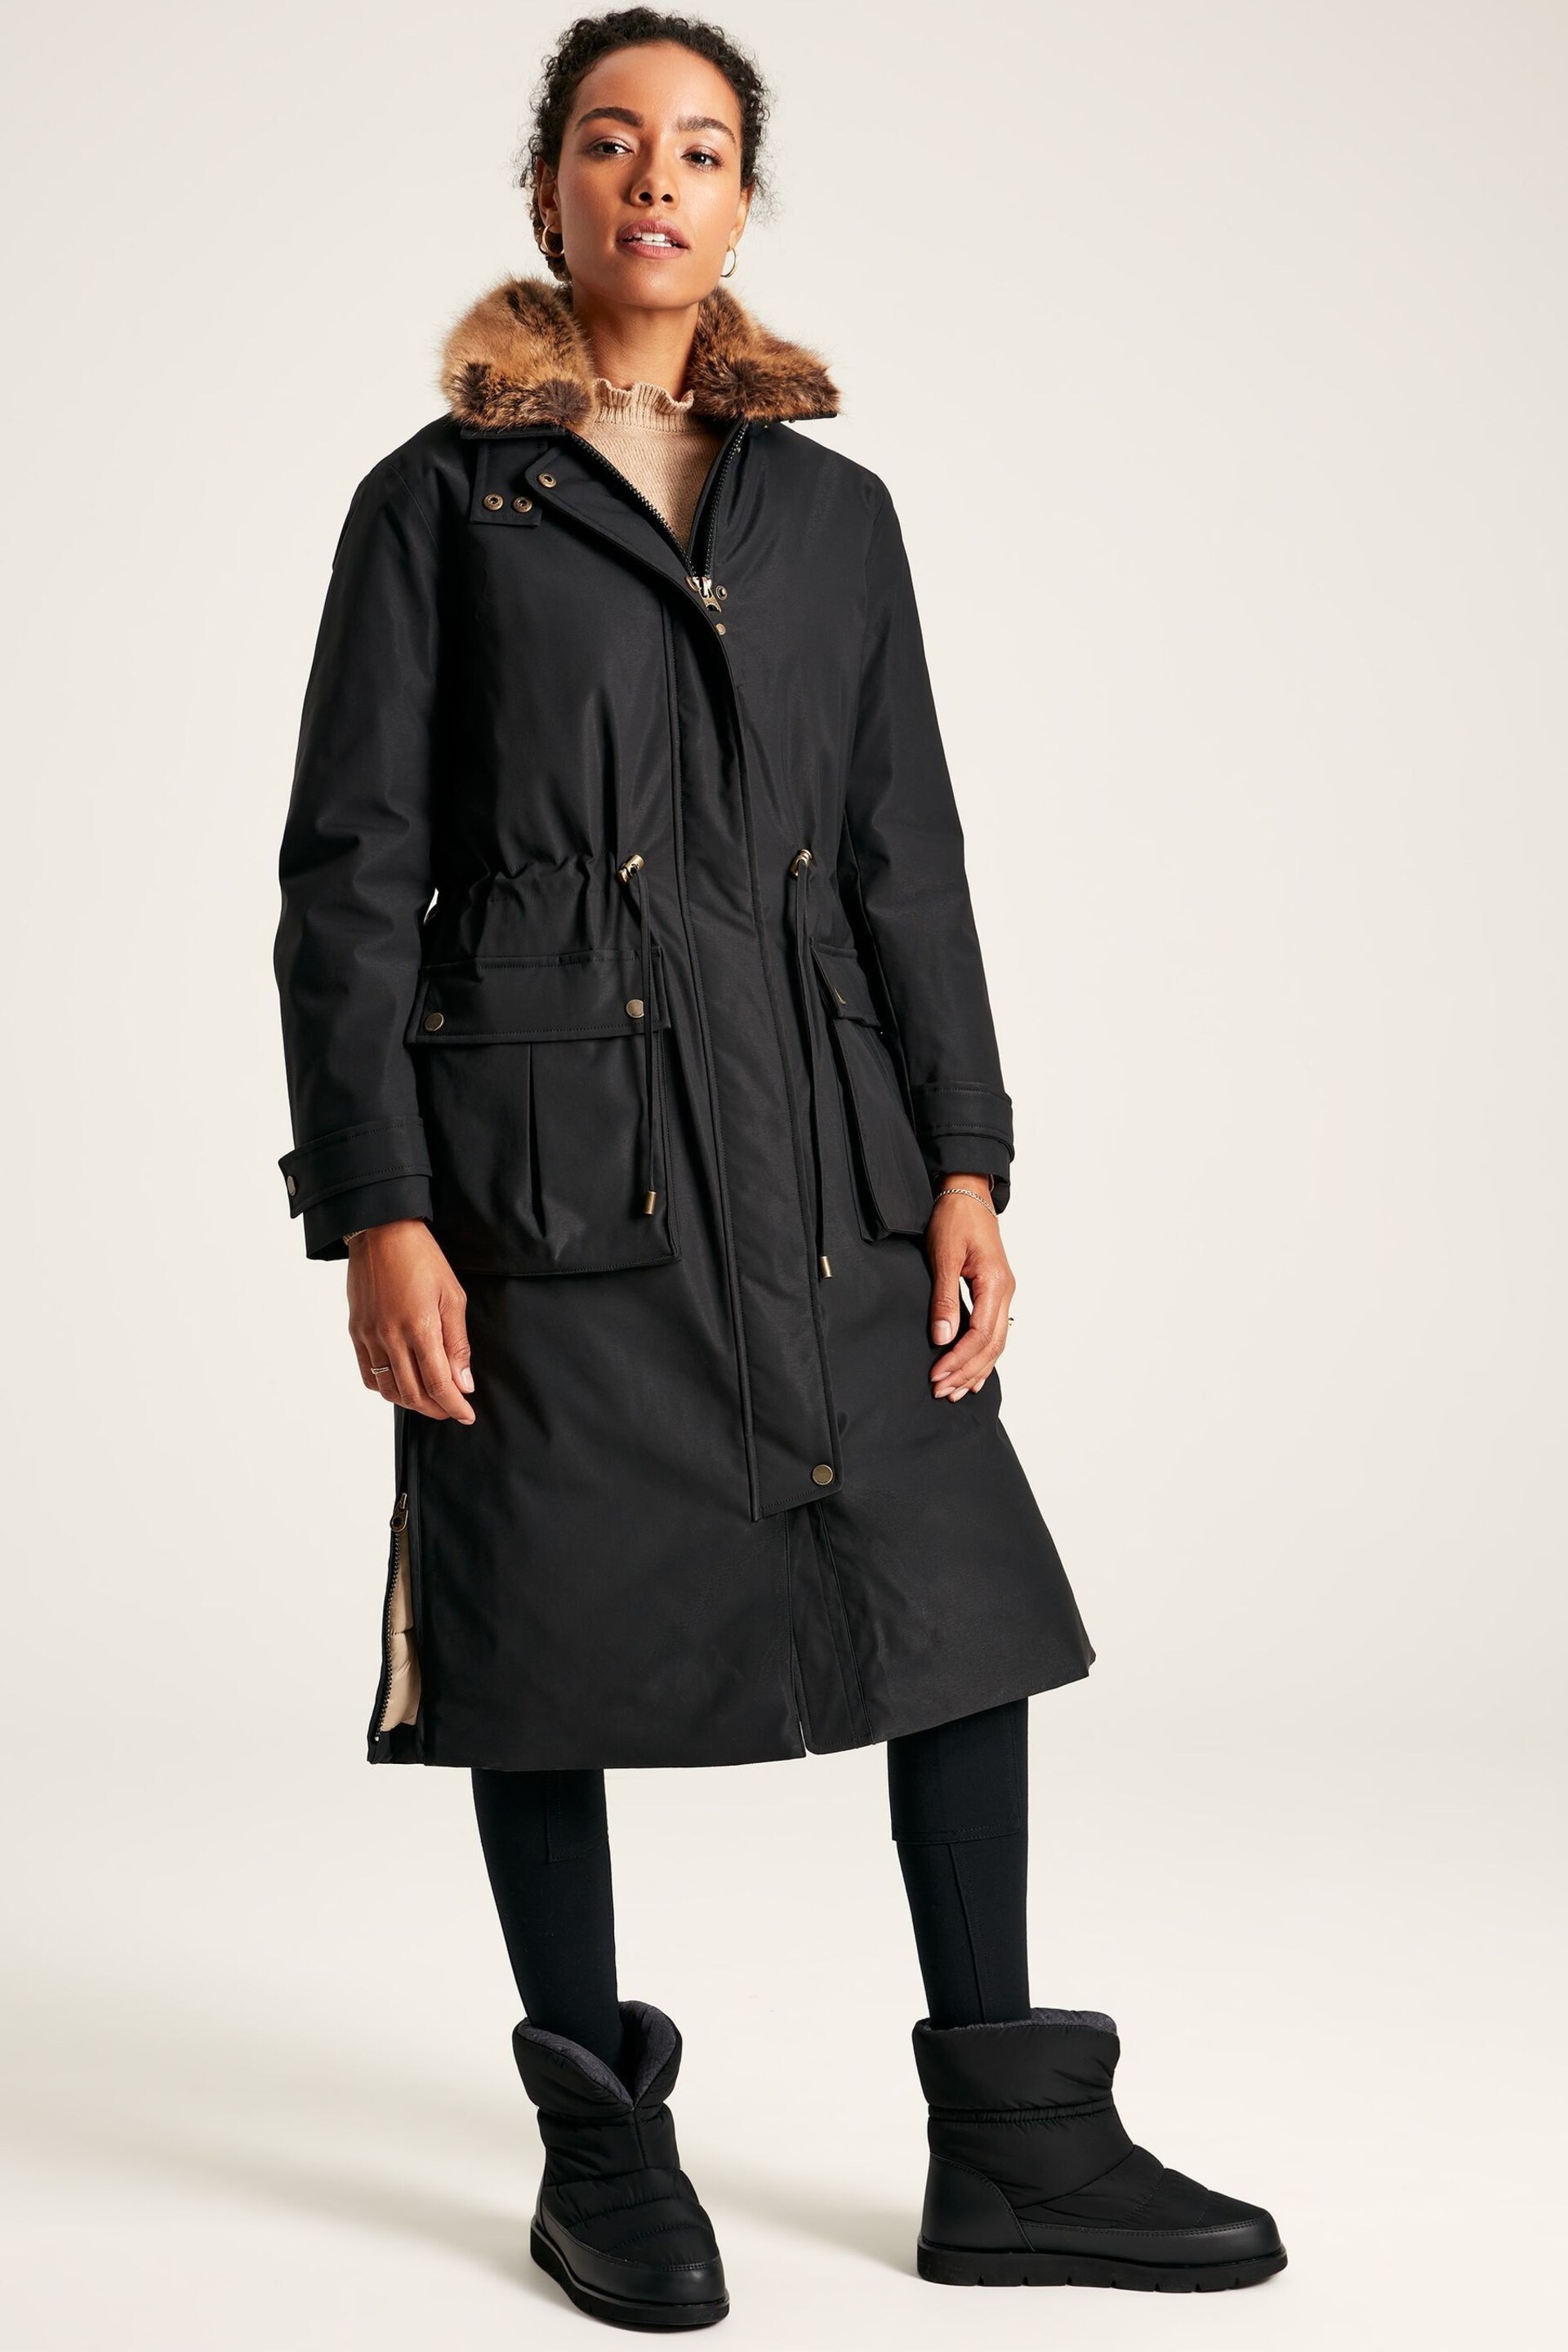 Joules Wilcote Black Waterproof Padded Raincoat - Image 1 of 9